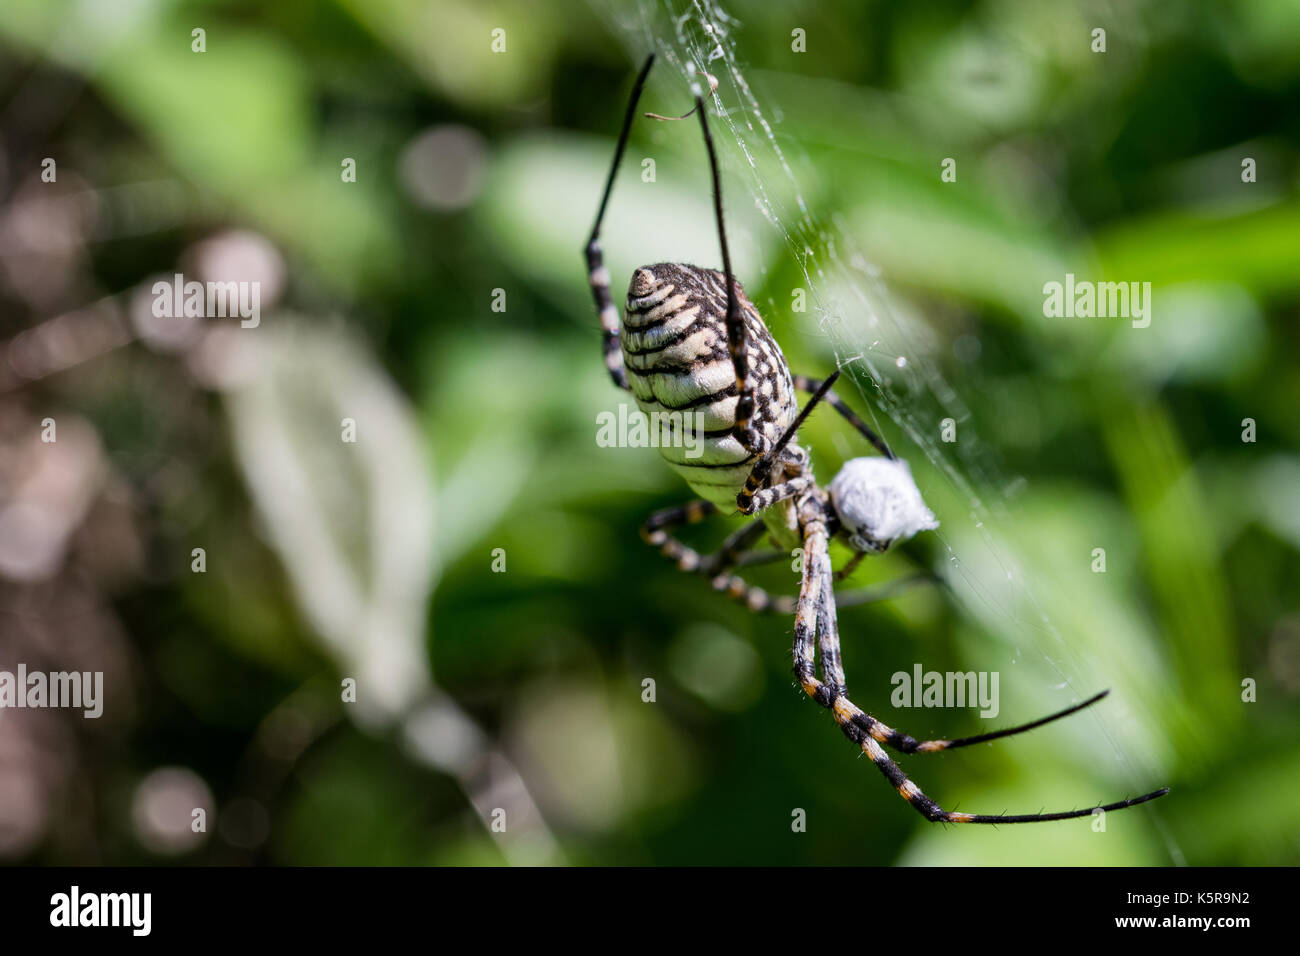 Una araña Argiope anillados (Argiope trifasciata) en su web acerca de comer su comida, probablemente una mosca, en un valle seco en Malta. Foto de stock